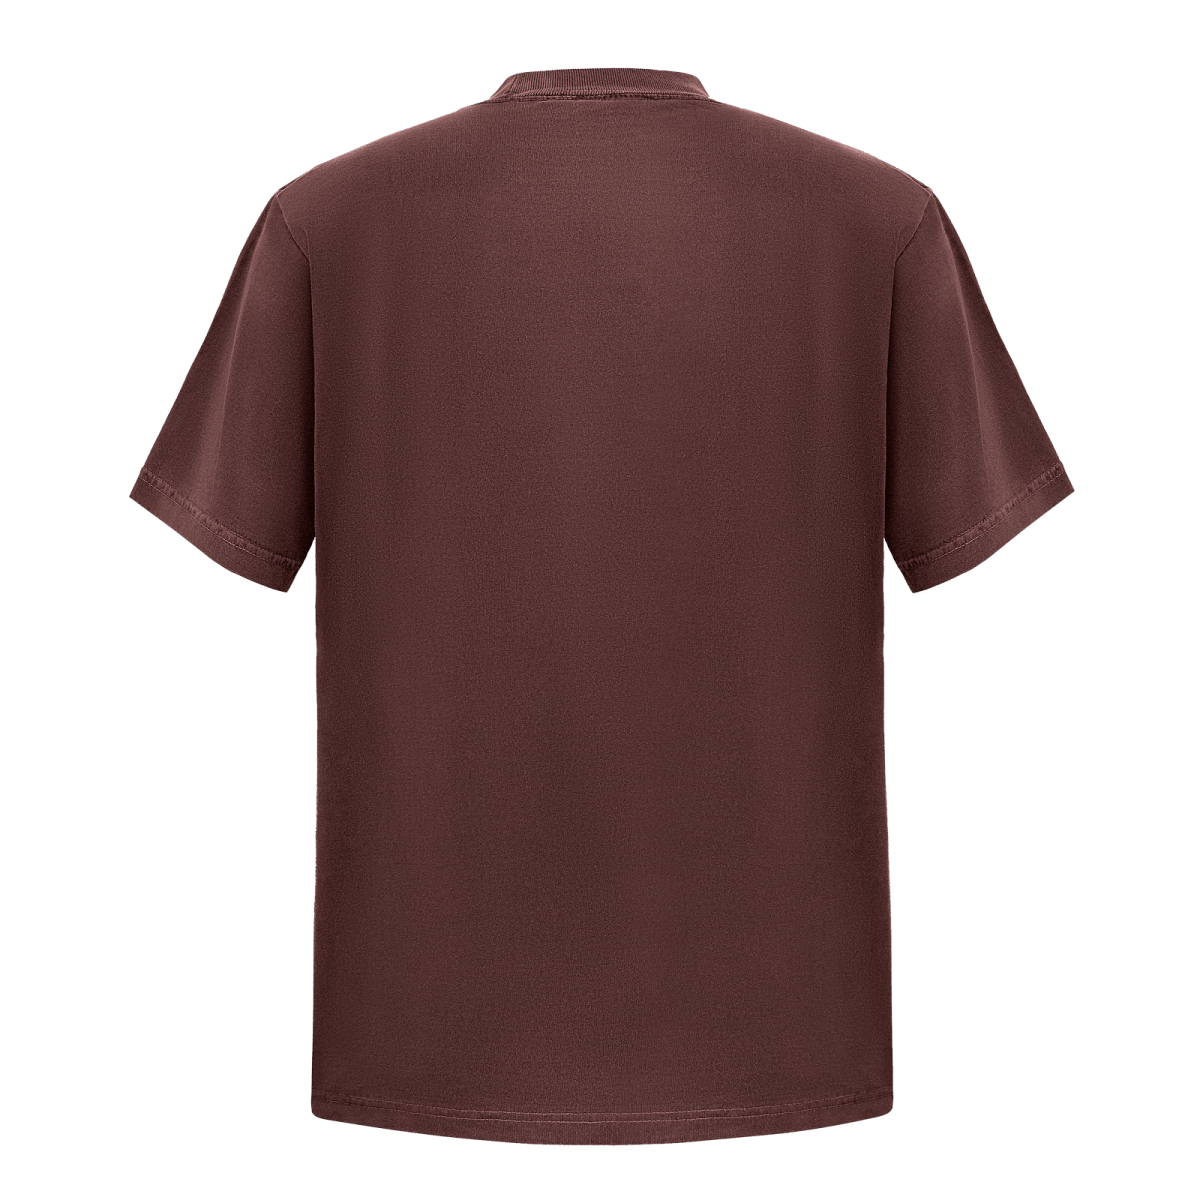 Garment Dye T-Shirt - Standard Size - Mocha